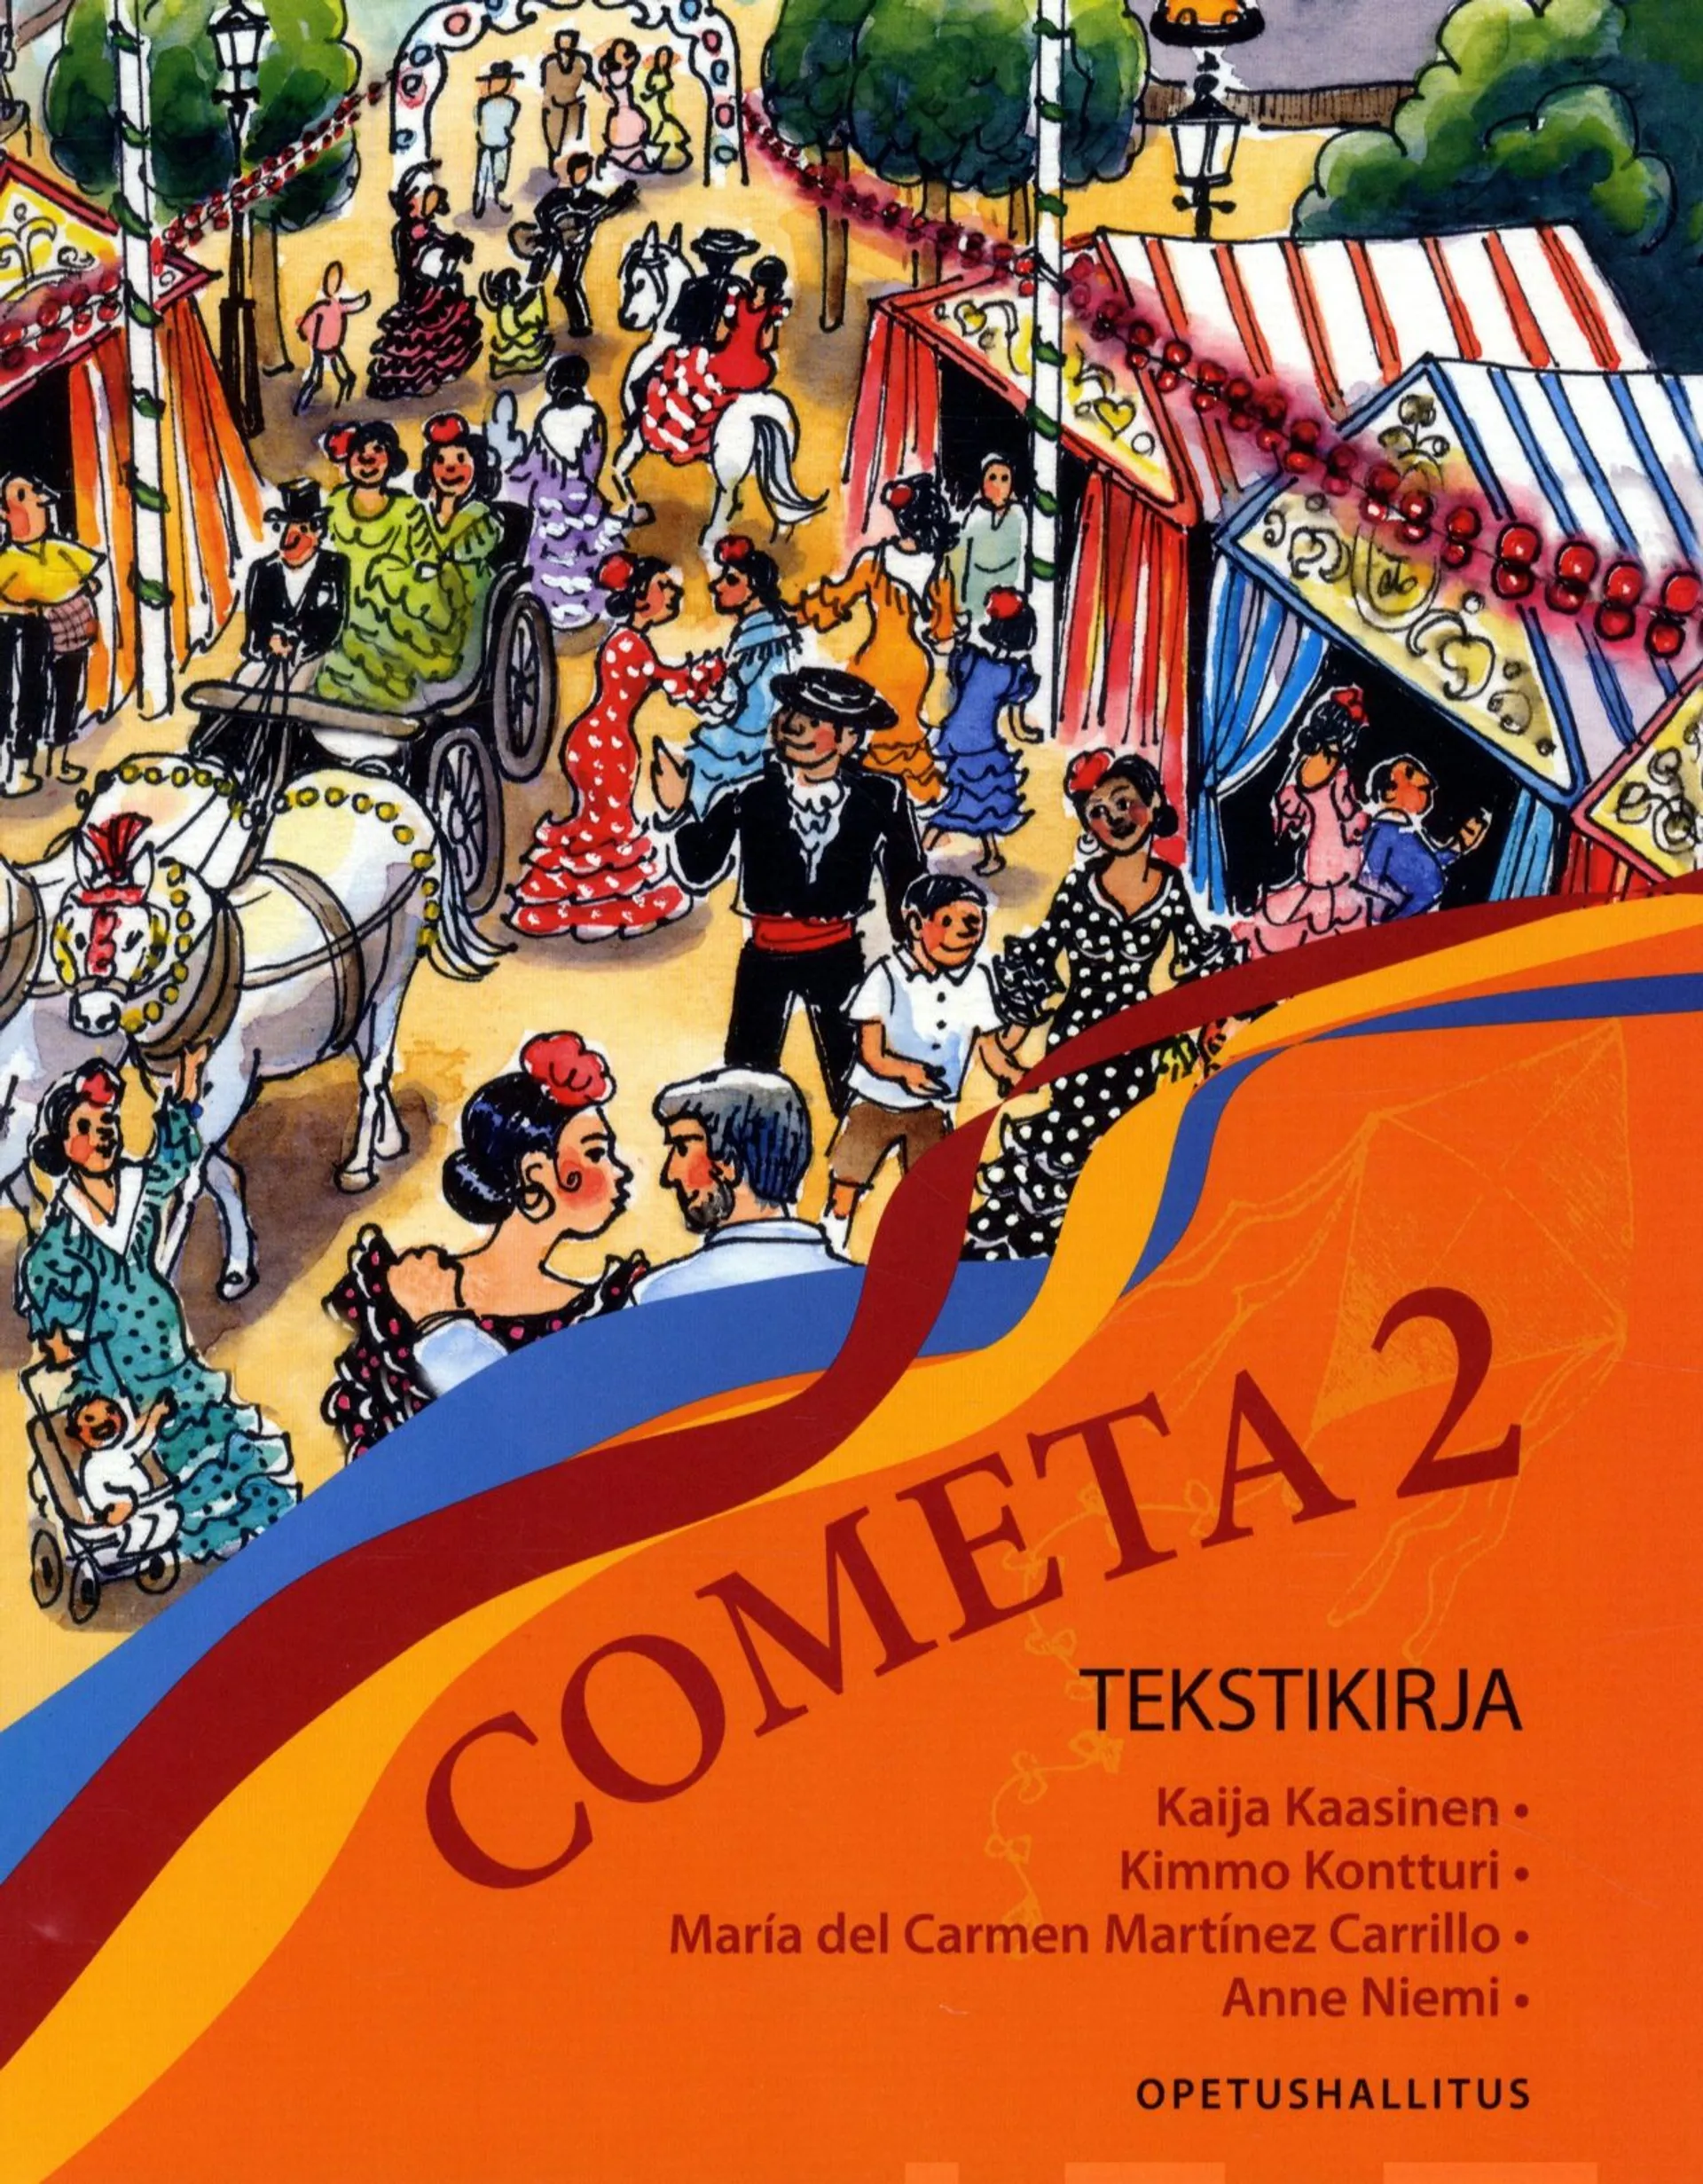 Kaasinen, Cometa 2 Alaluokkien pitkän espanjan tekstikirja